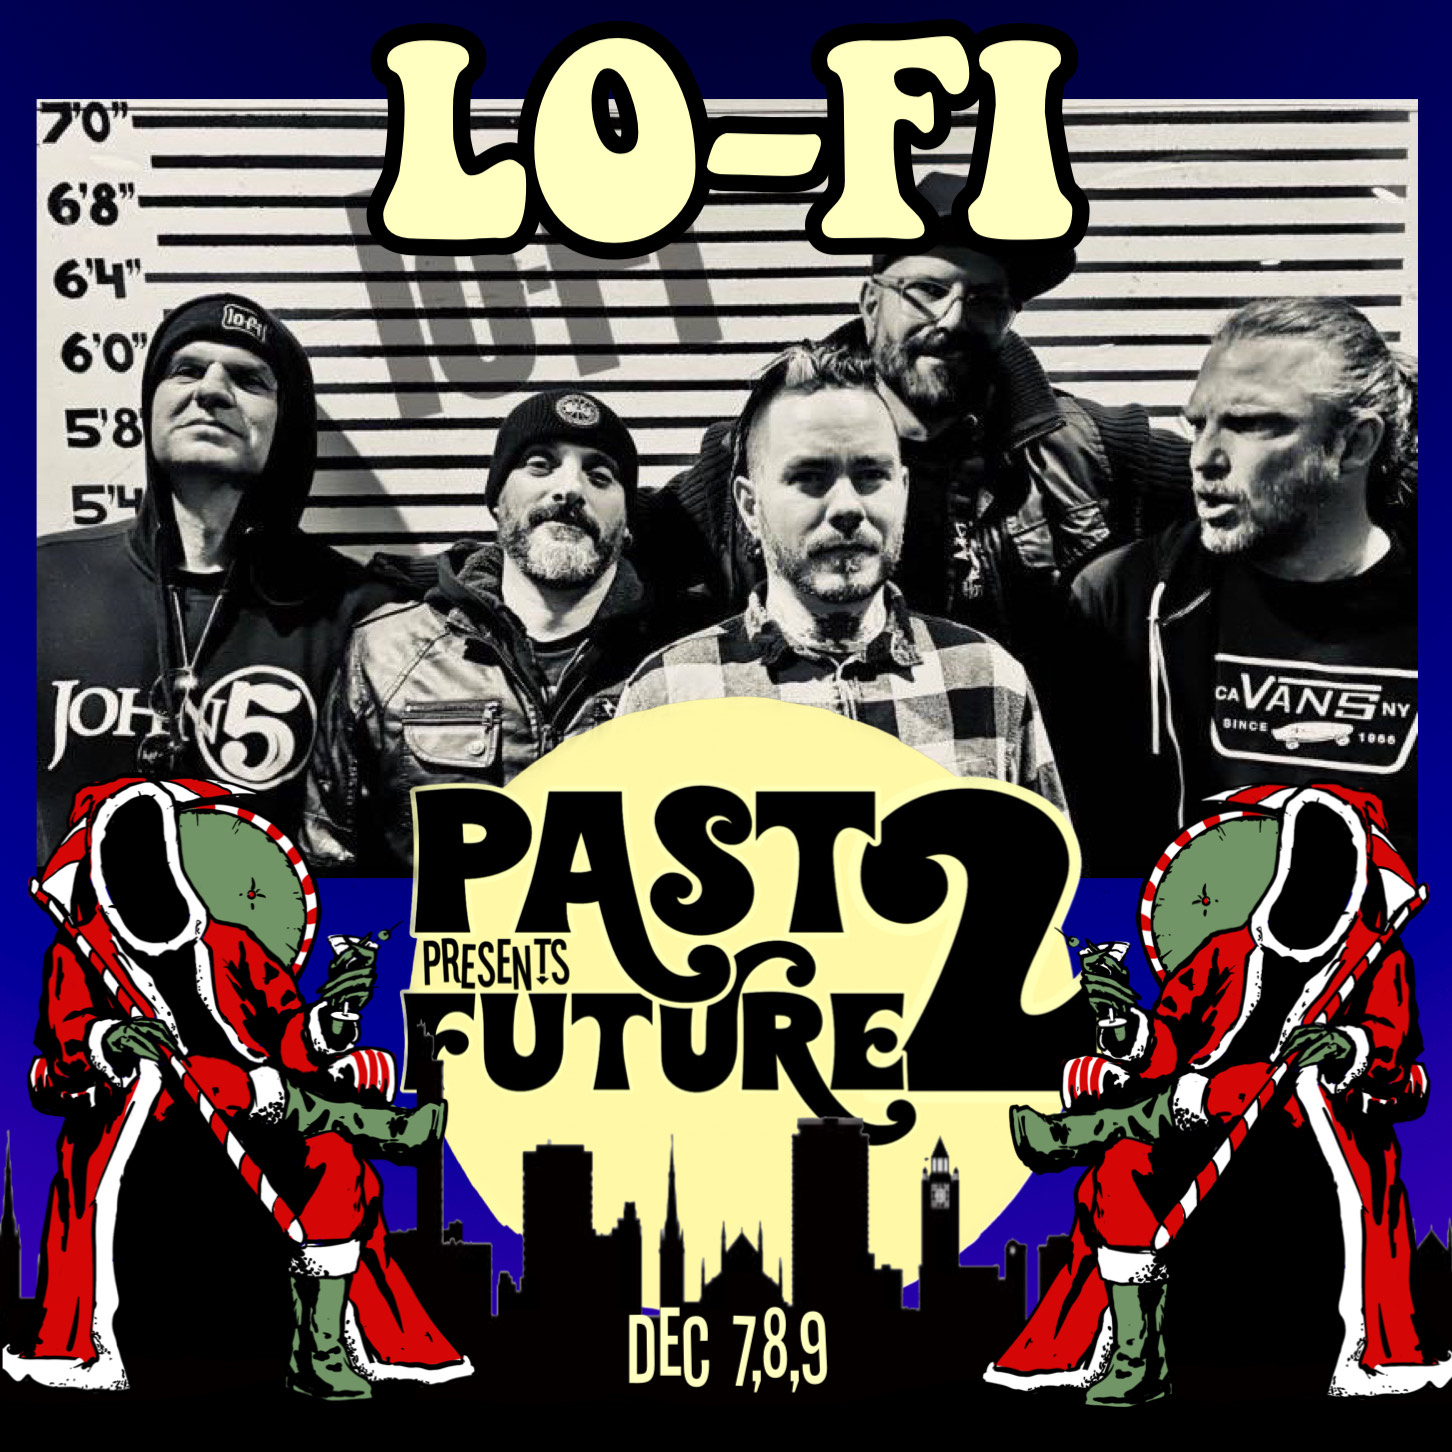 lo-fi past presents future